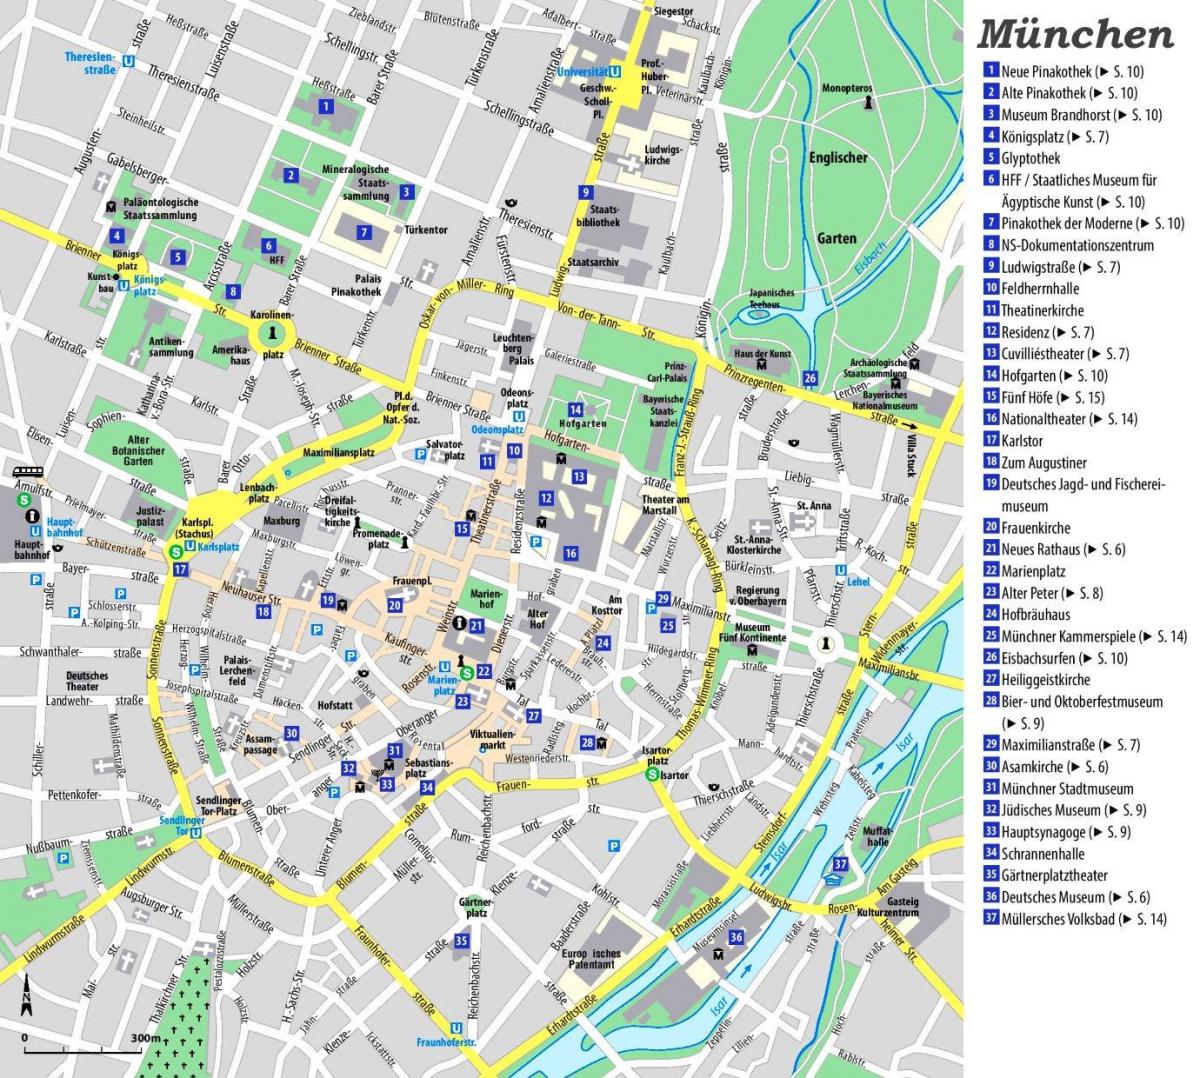 Plan des attractions de Munich